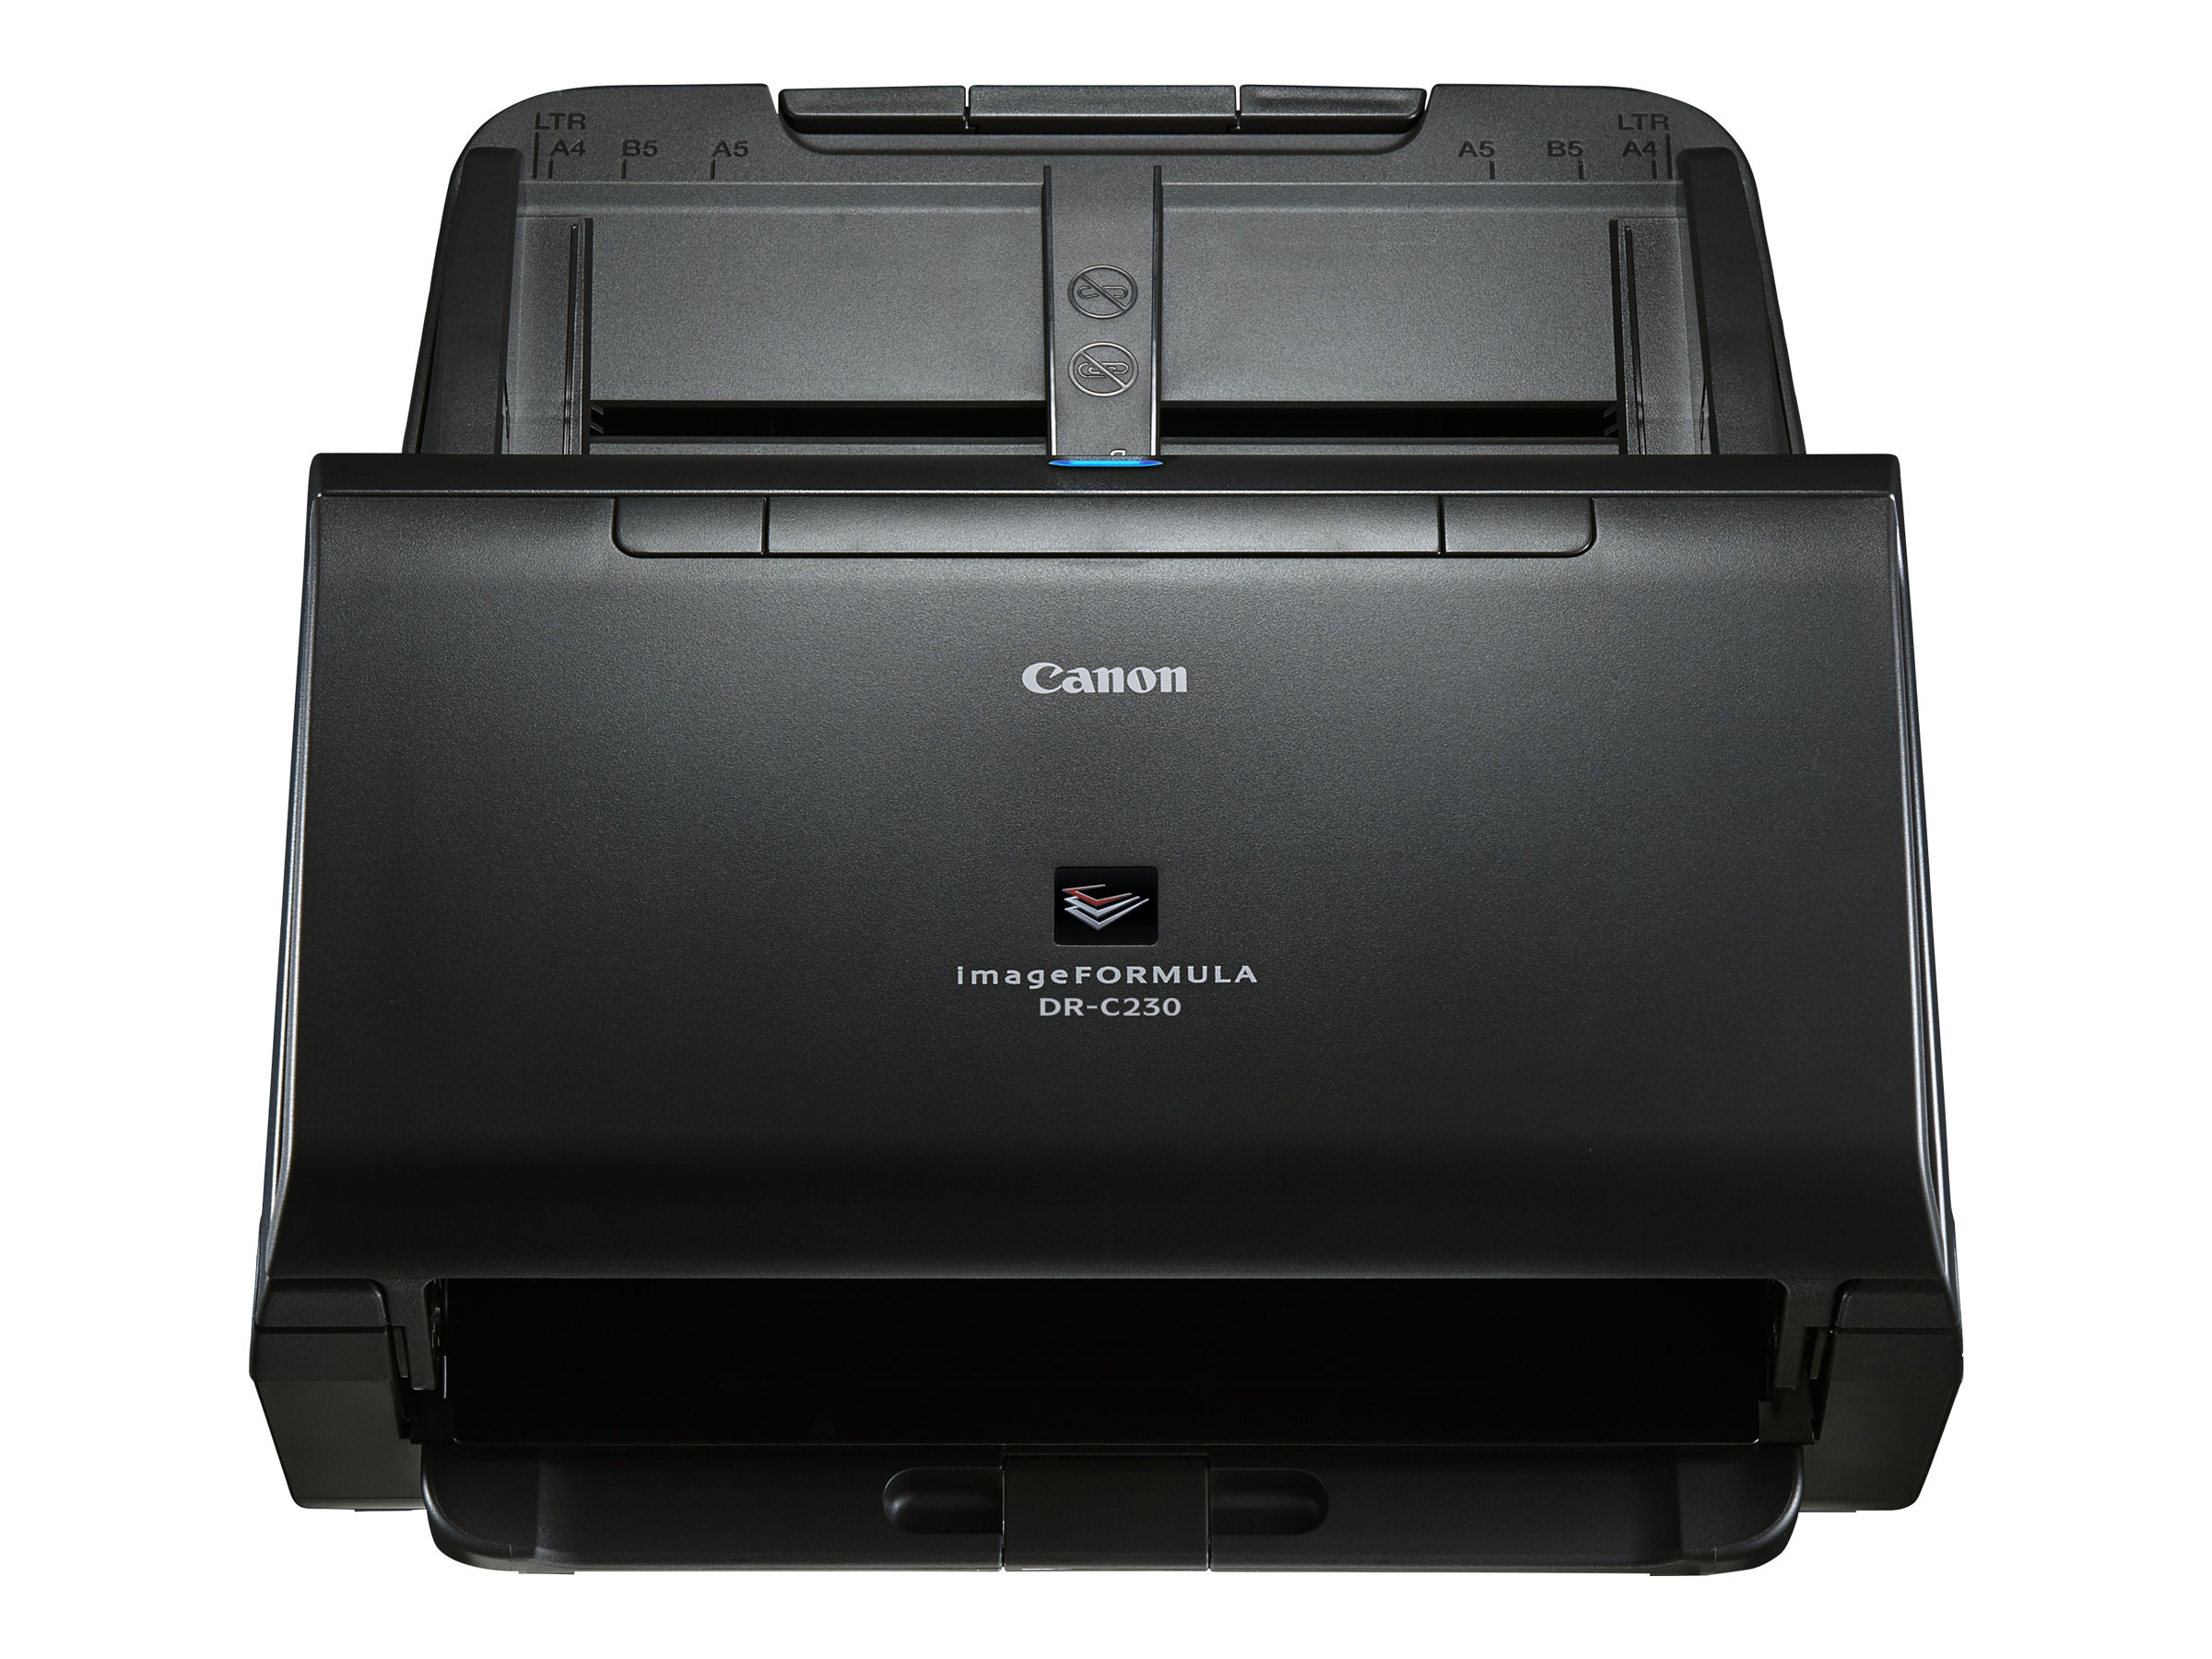 Canon imageFORMULA DR-C230 - Dokumentenscanner - CMOS / CIS - Duplex - Legal - 600 dpi x 600 dpi - bis zu 30 Seiten/Min. (einfarbig)